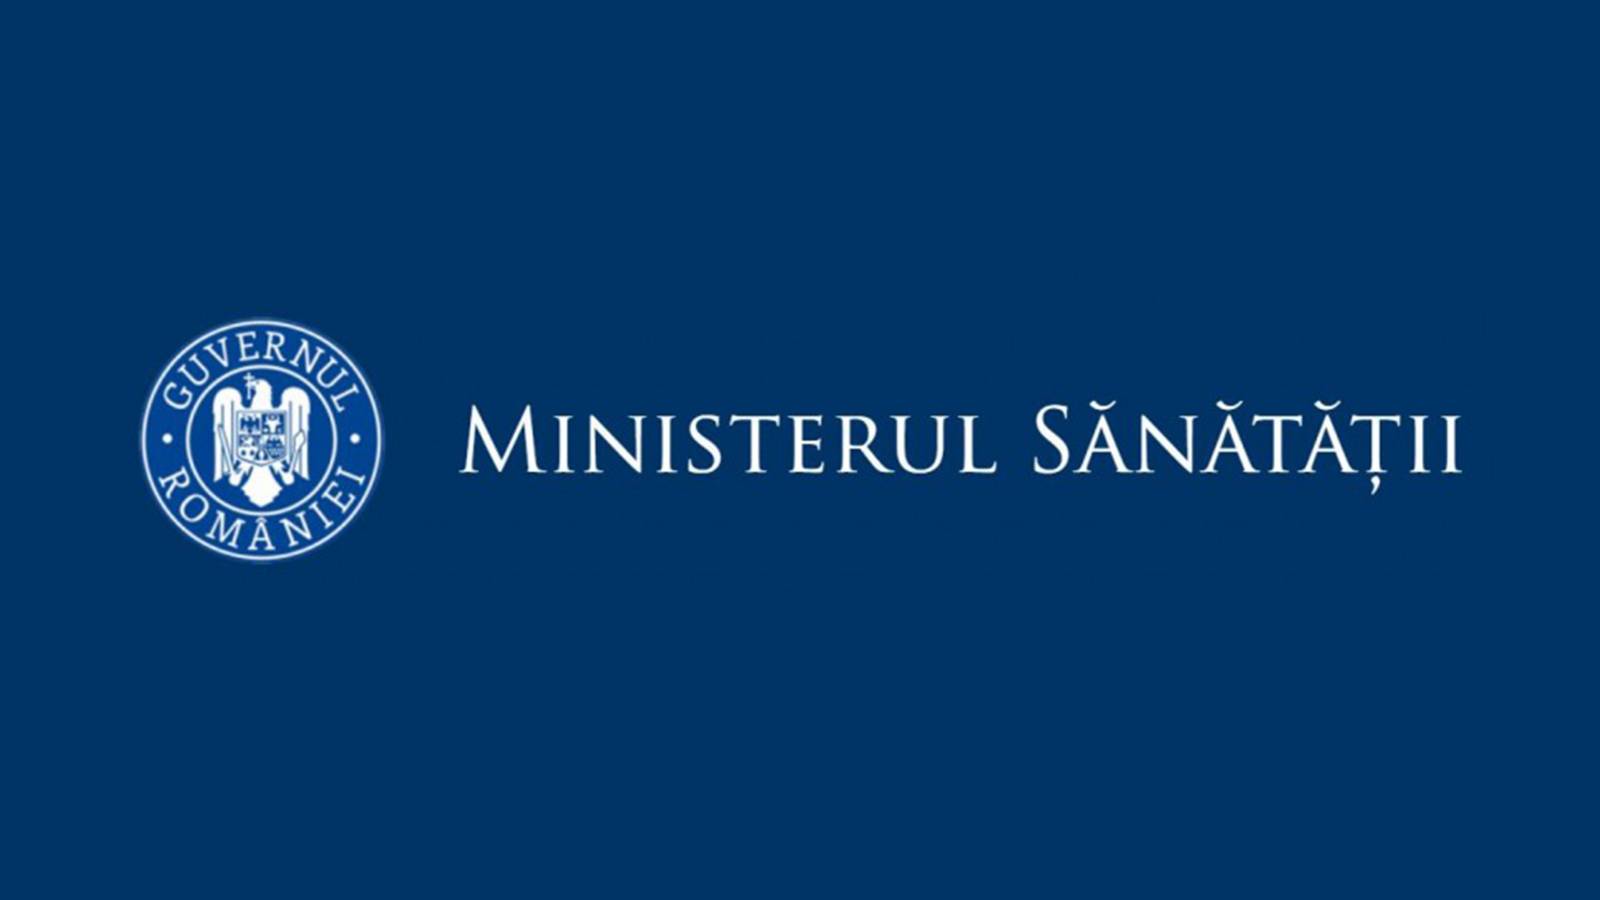 Sundhedsministeriets incidensrater for amter i Rumænien den 4. marts